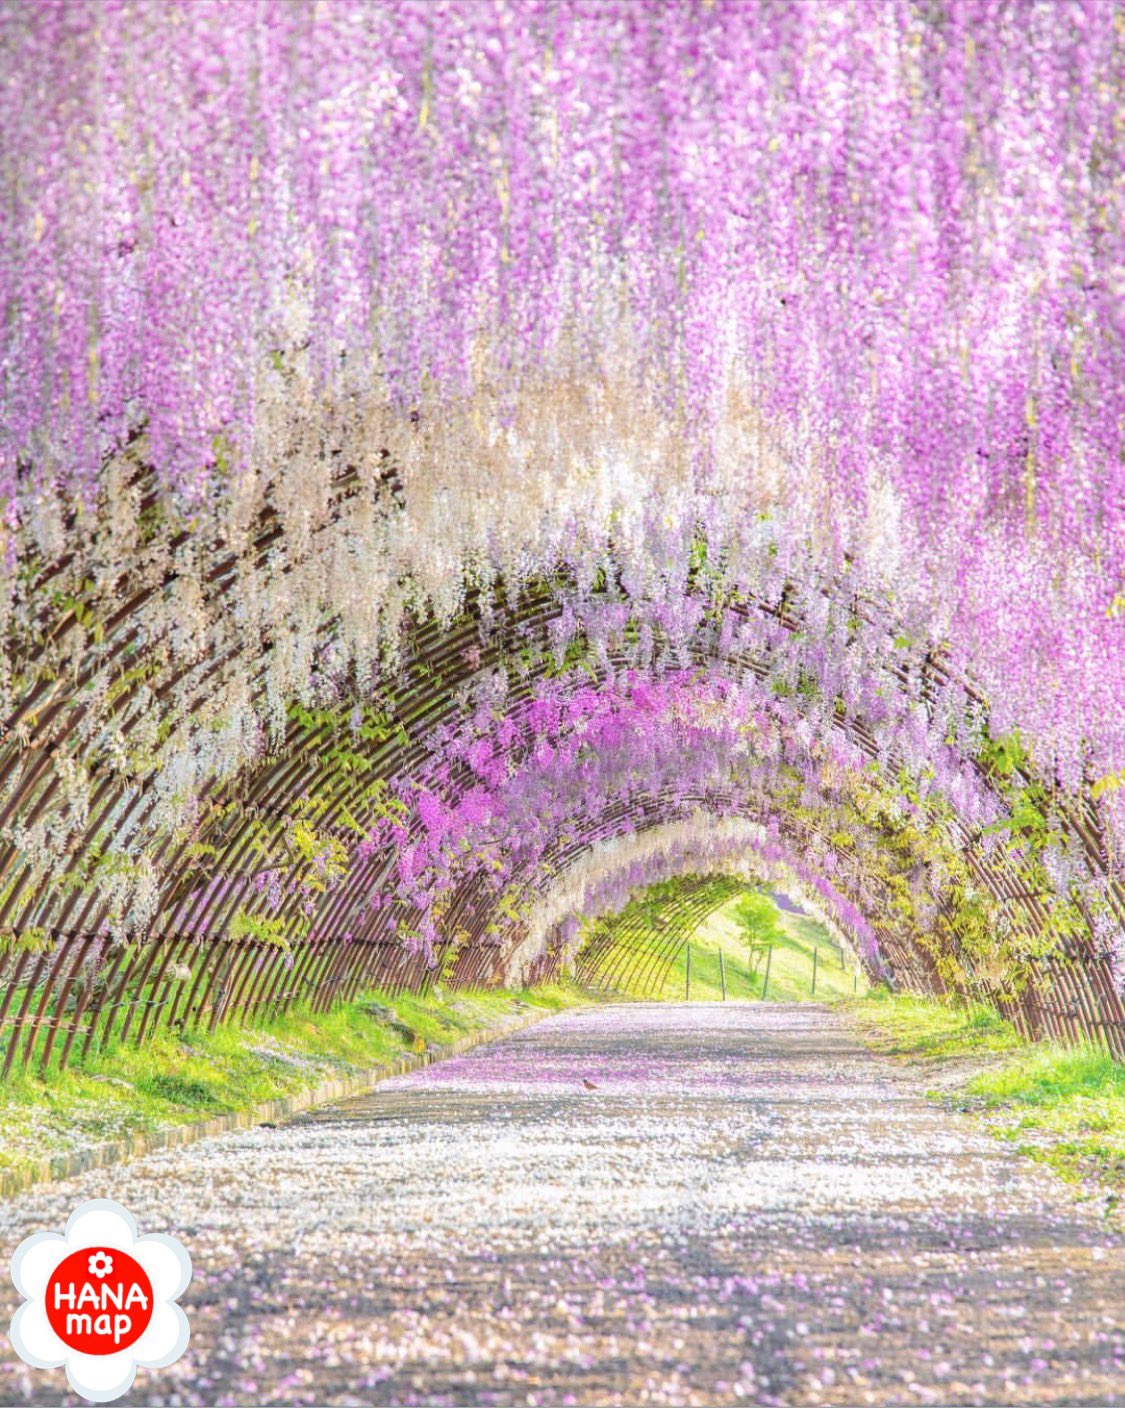 はなまっぷ 日本の美しい花風景 Mai 7100 さんの 花のある風景に花まるを 色とりどりに輝く絶景の藤のトンネルをありがとうございます 福岡 河内藤園 Kawachi Fuji En Wisteria Tunnels Fukuoka Pref フジの花言葉 歓迎 陶酔